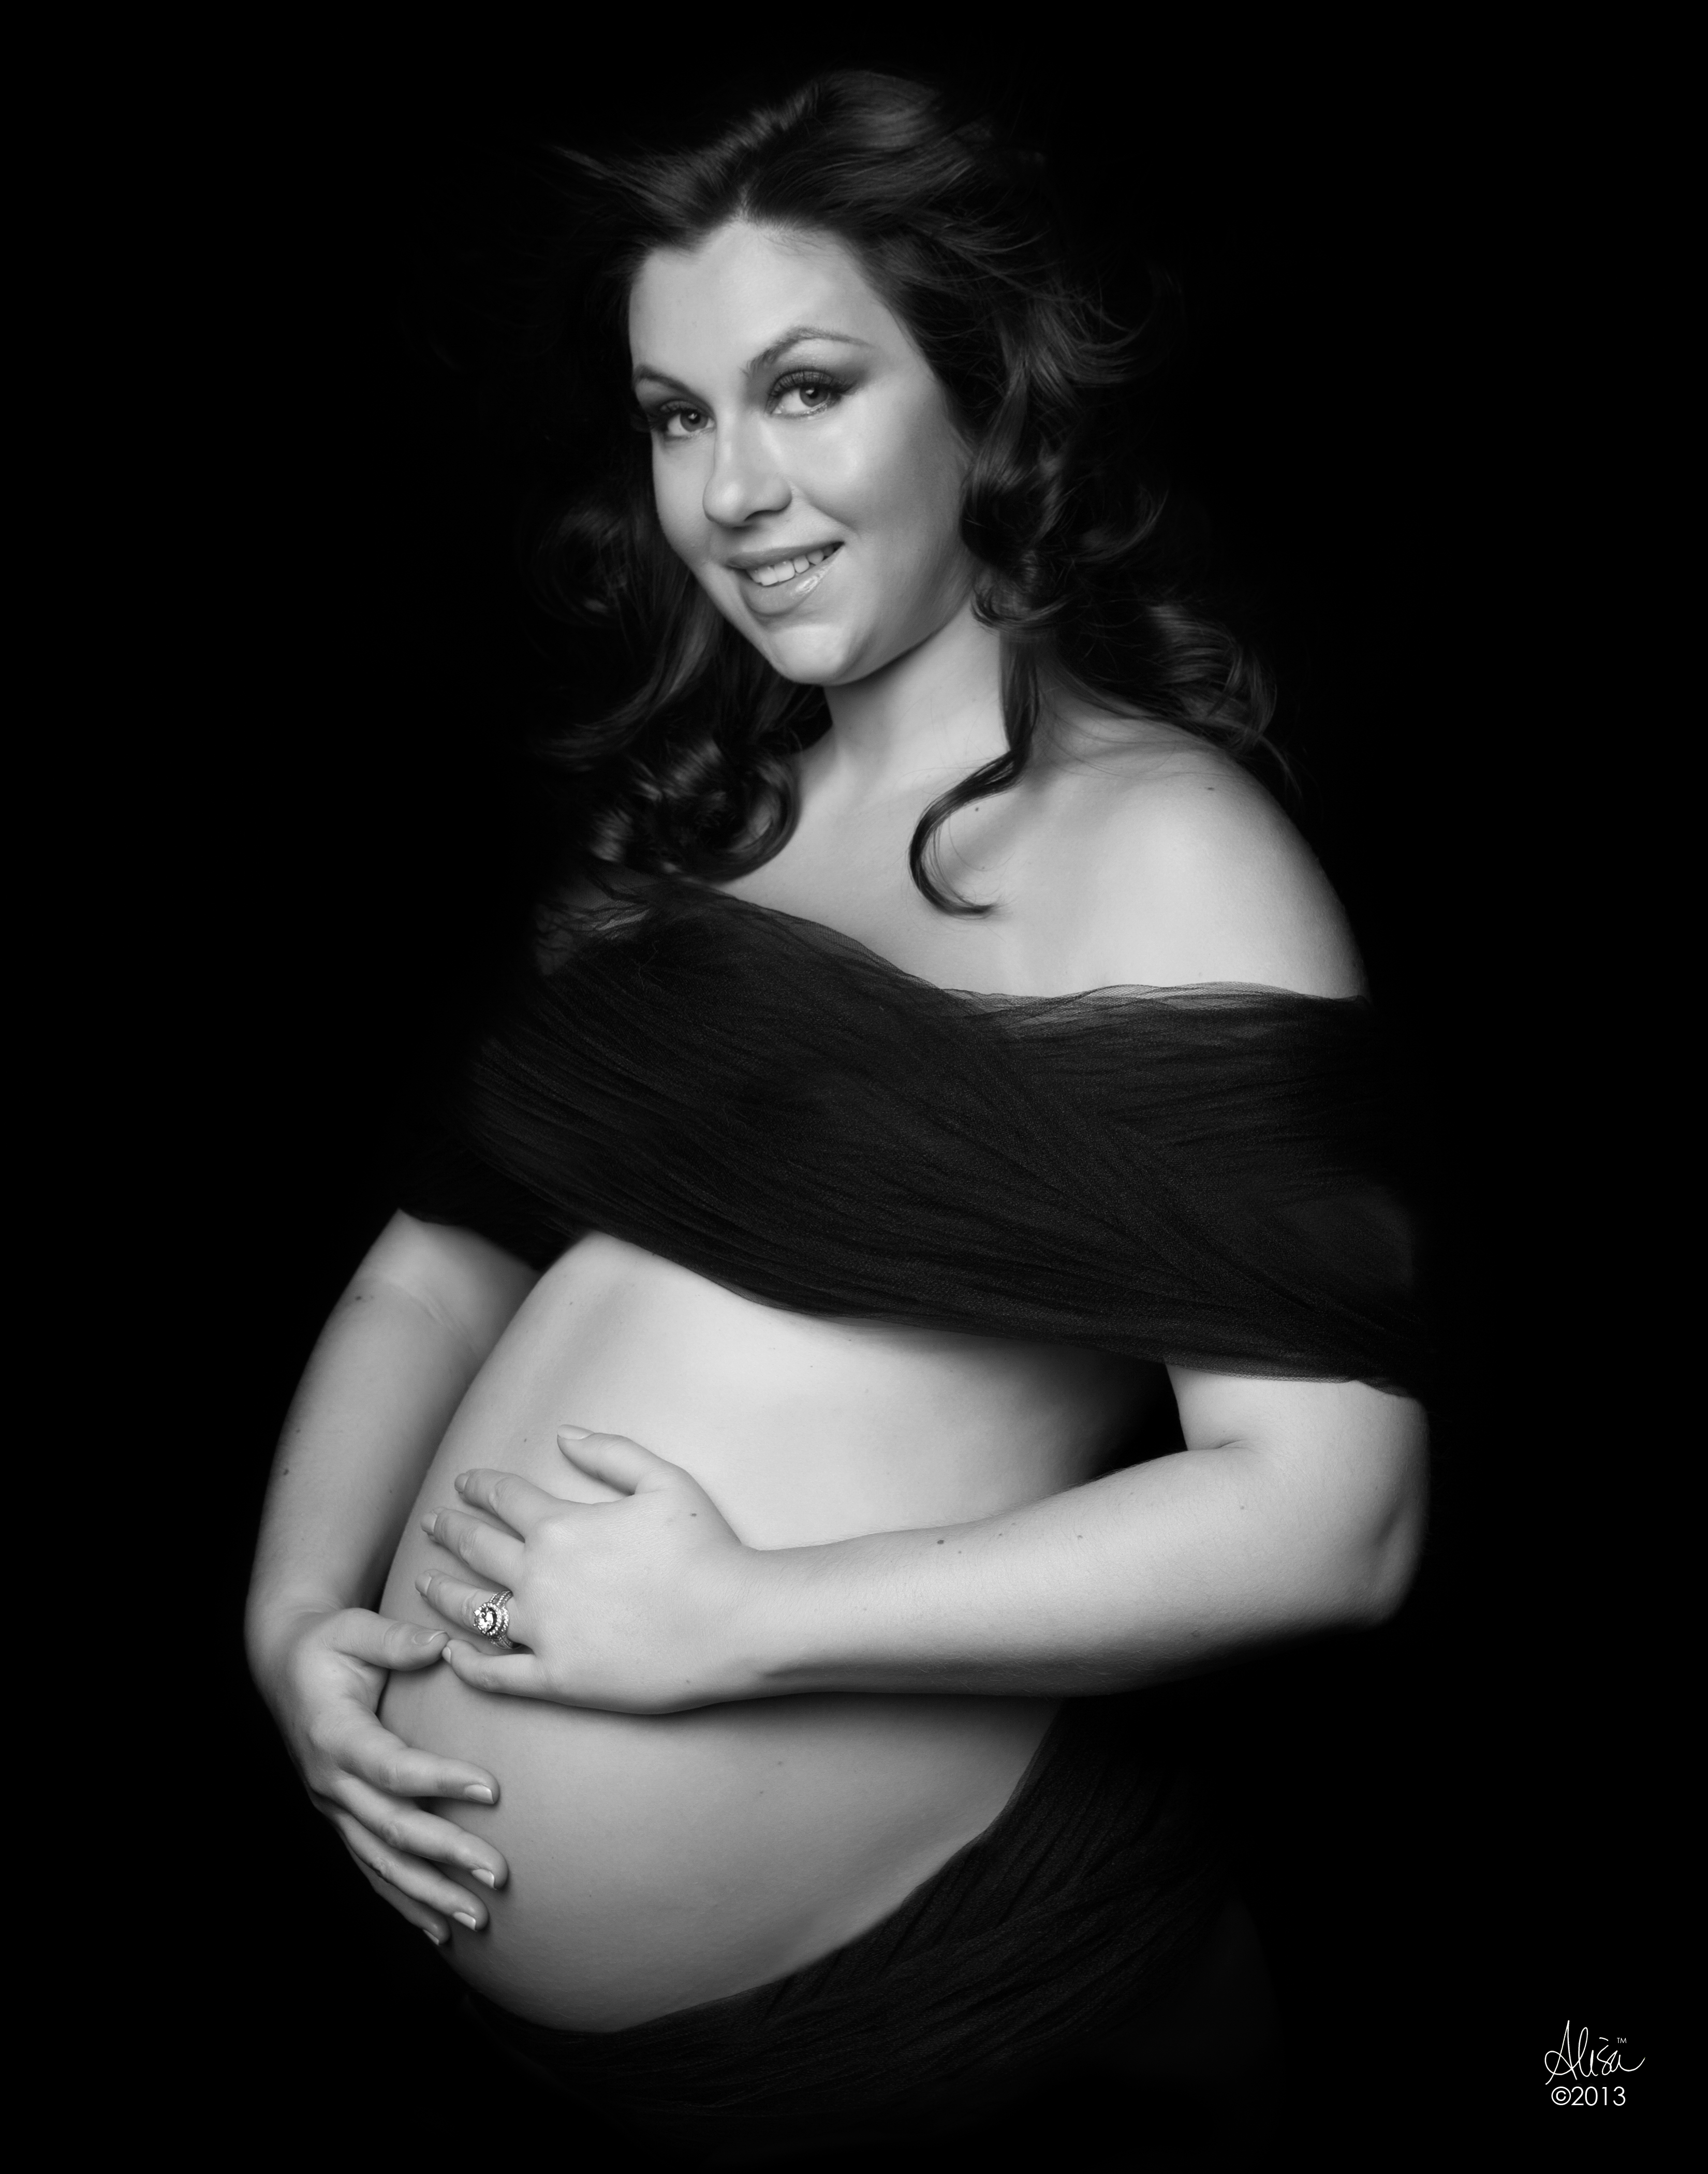 Houston Maternity Photographer | Expectant